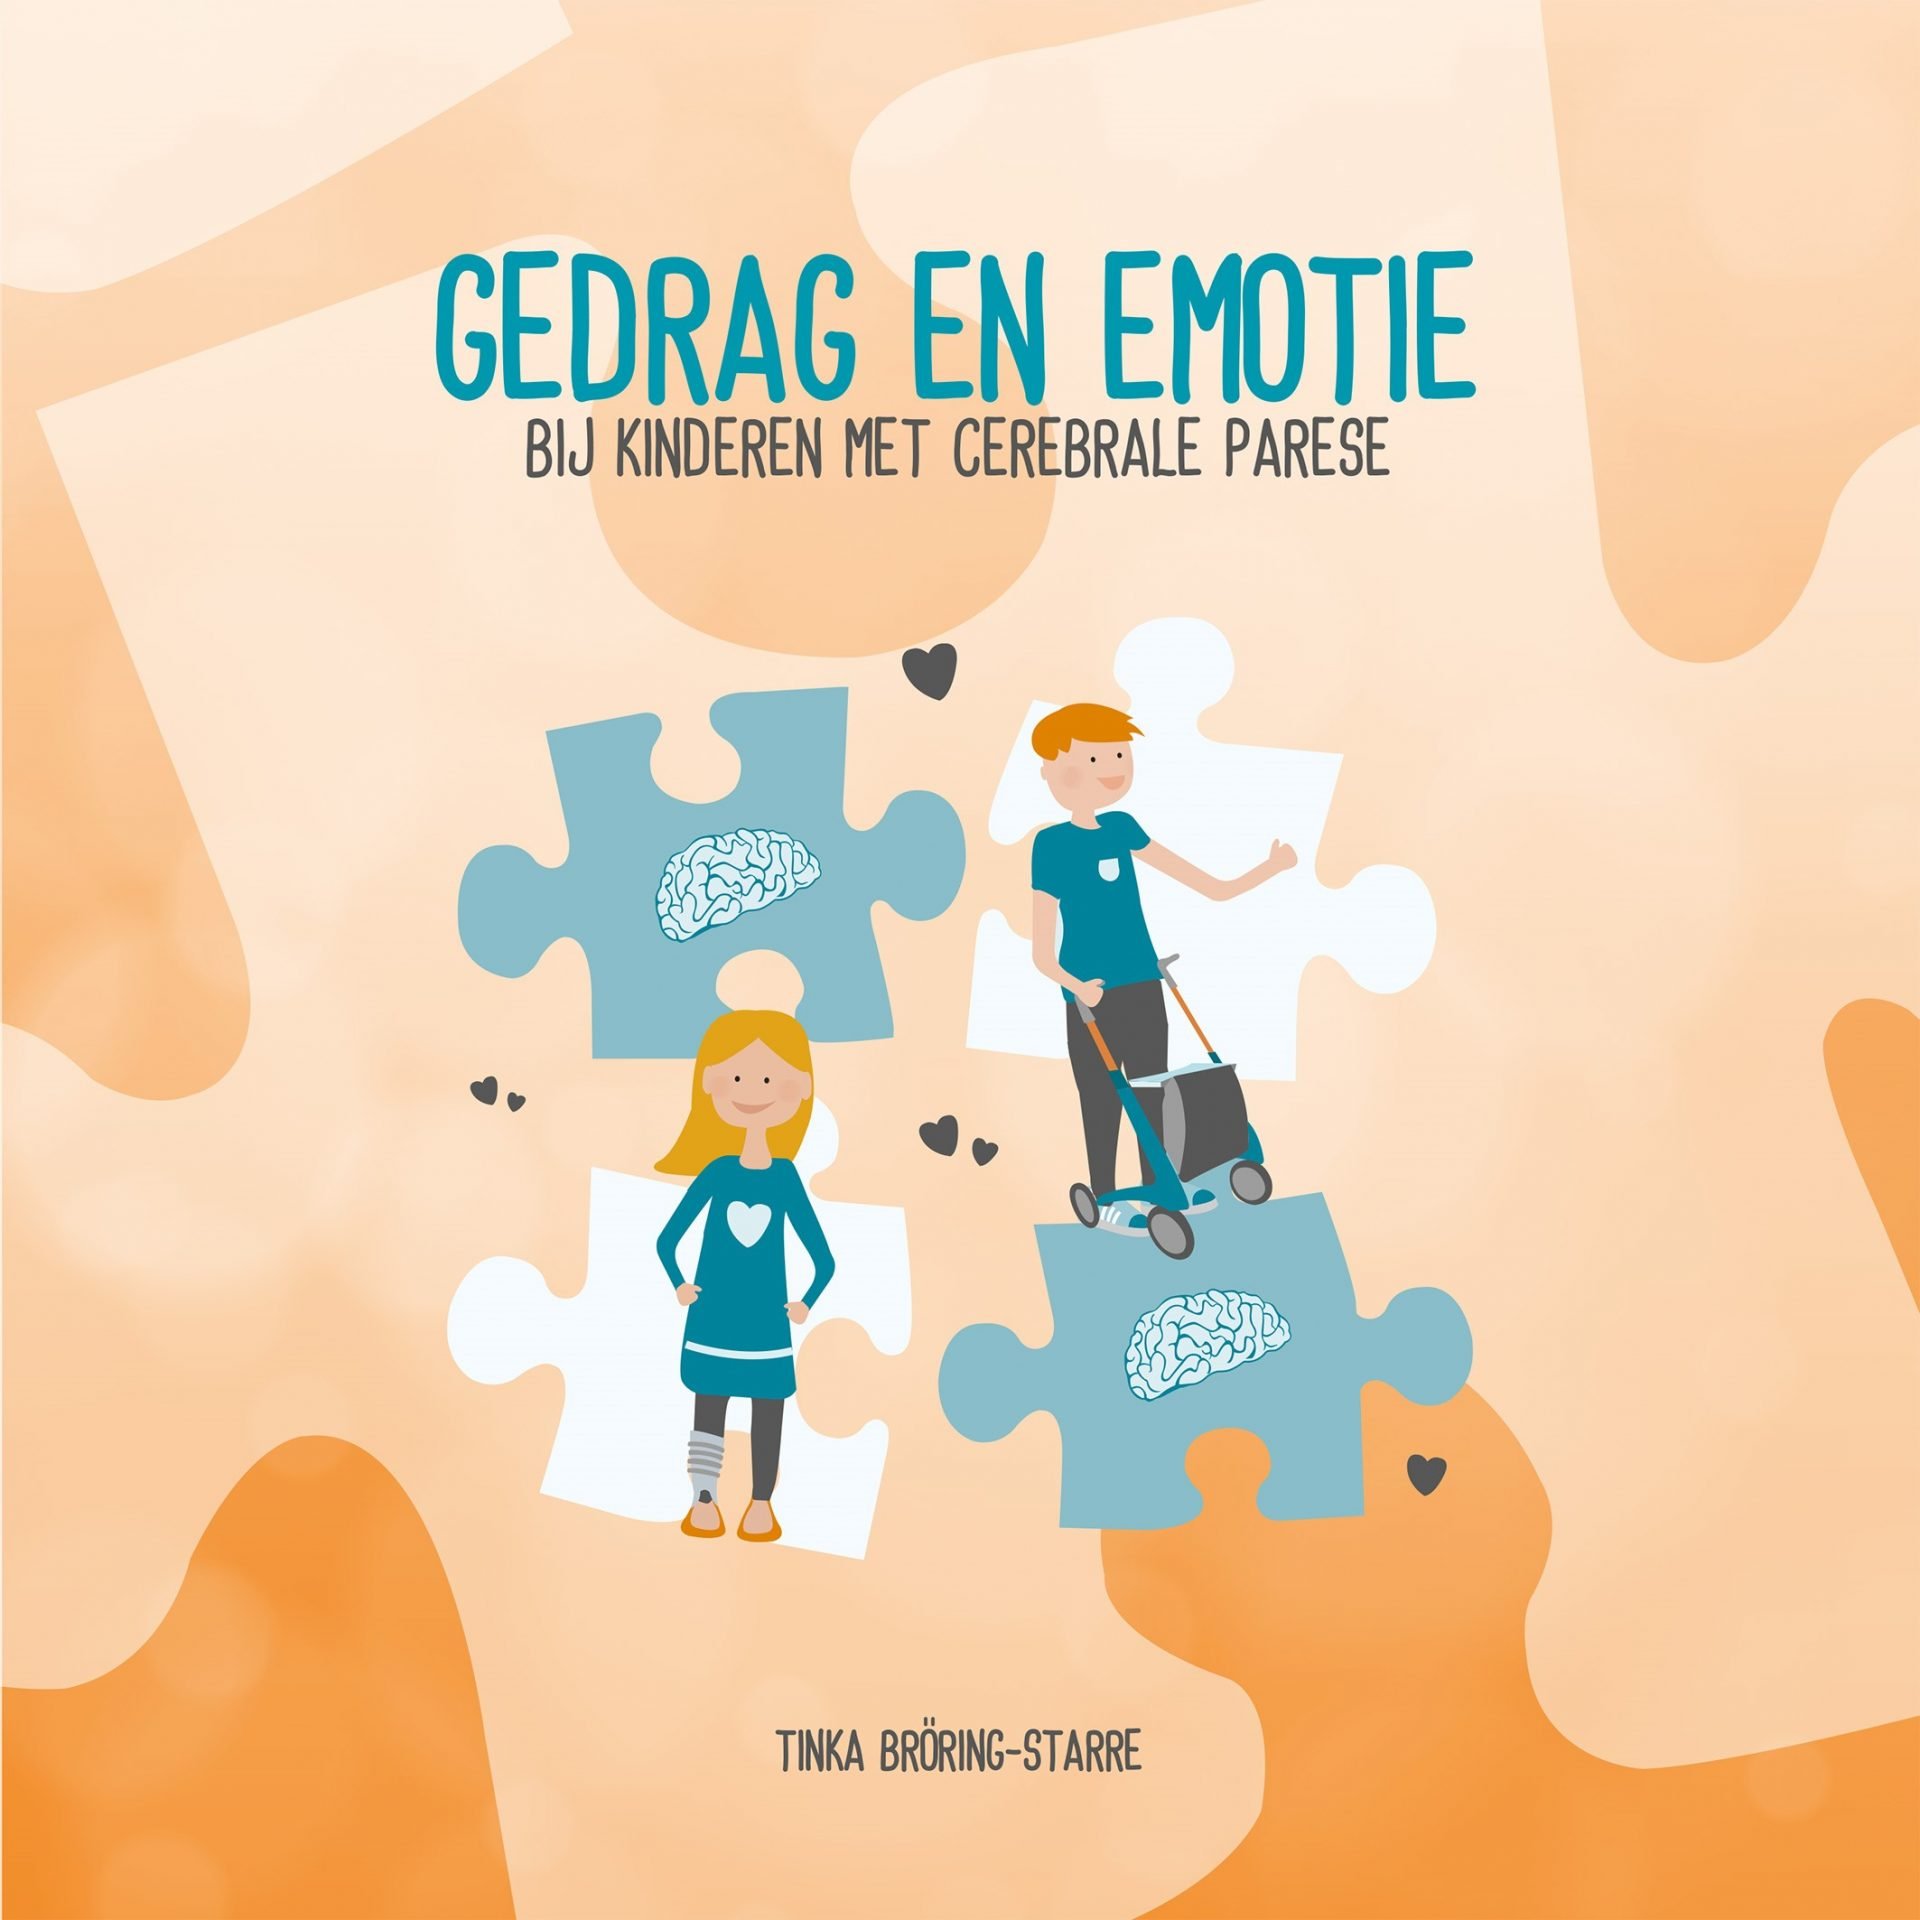 Boek Gedrag en Emotie bij kinderen met cerebrale parese, herziene uitgave (2021)